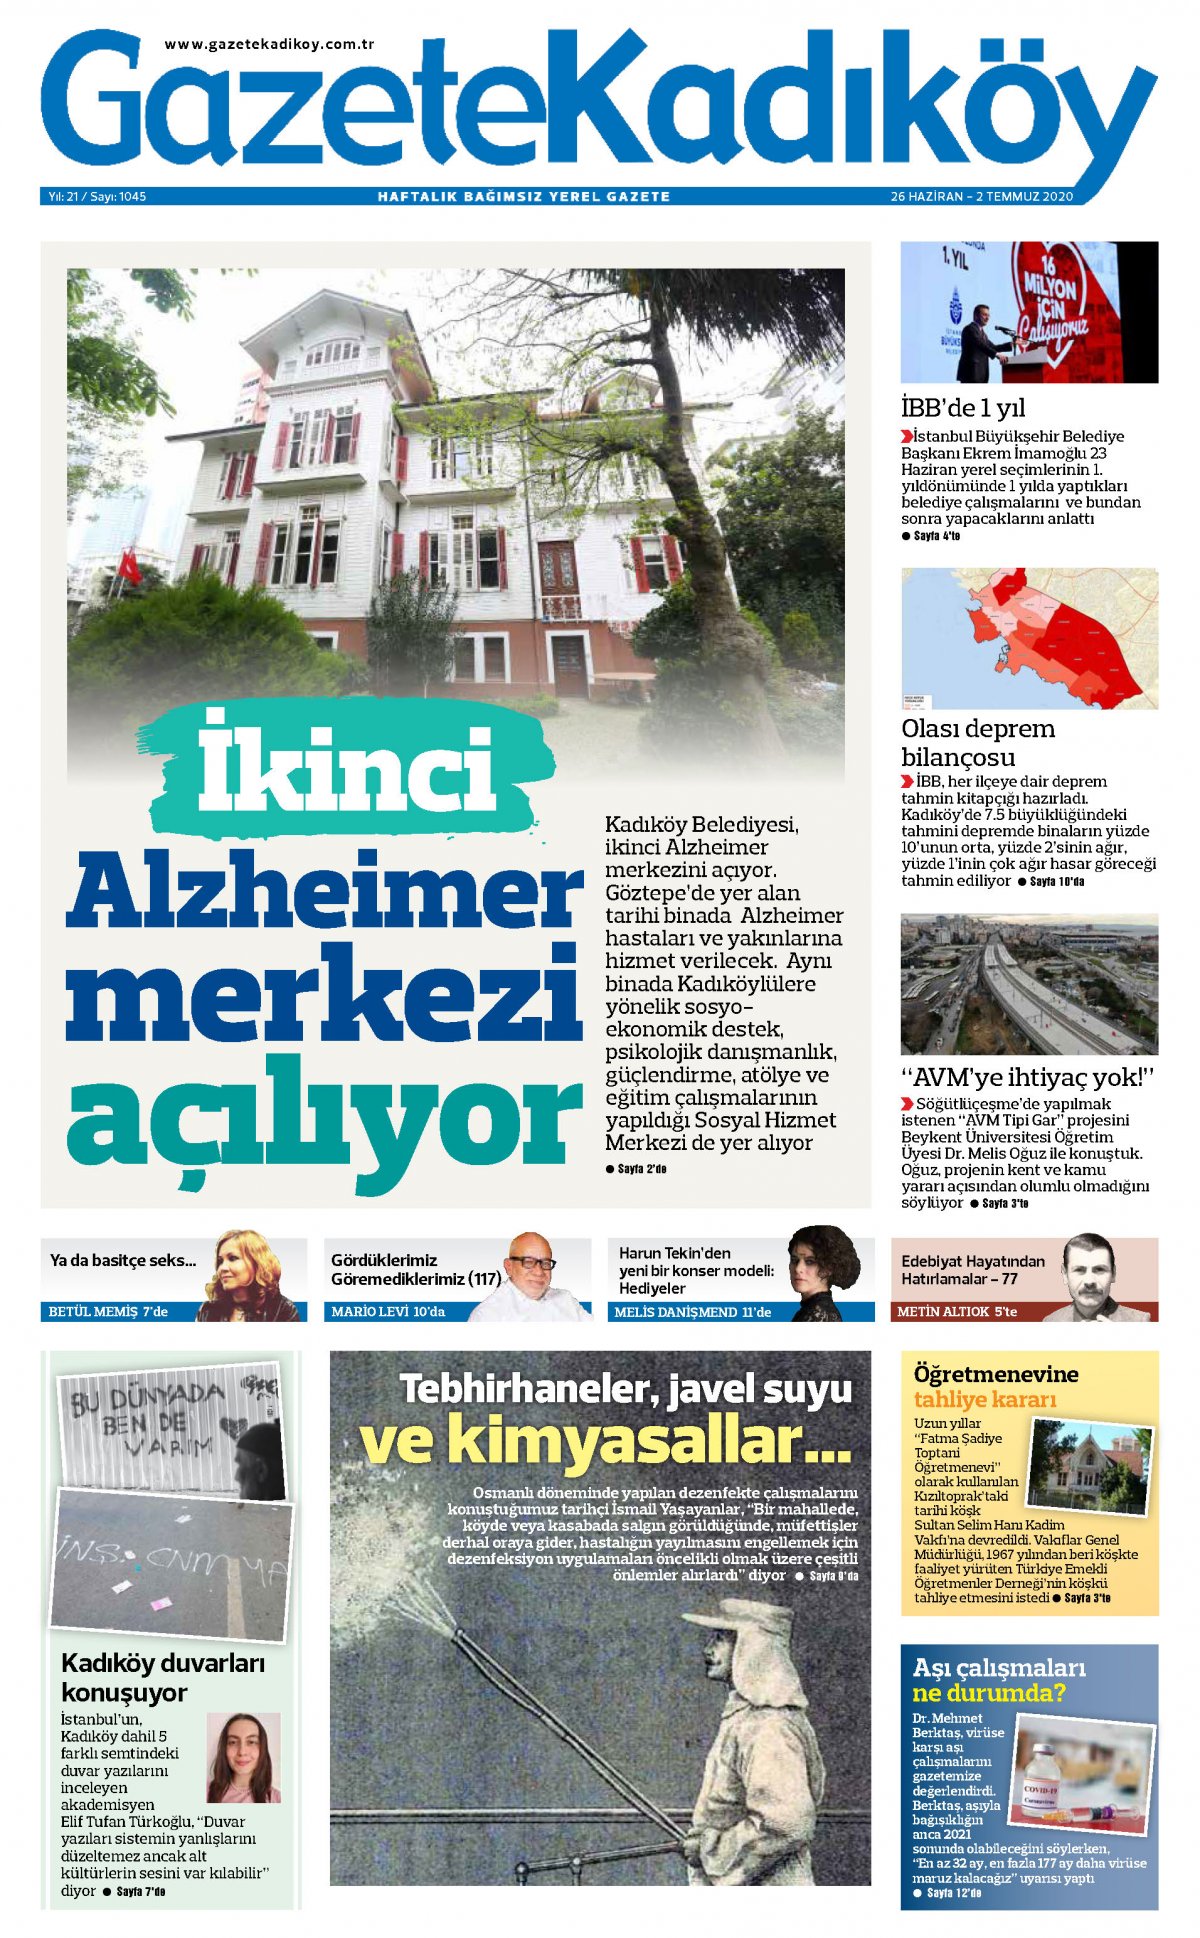 Gazete Kadıköy - 1045. Sayı